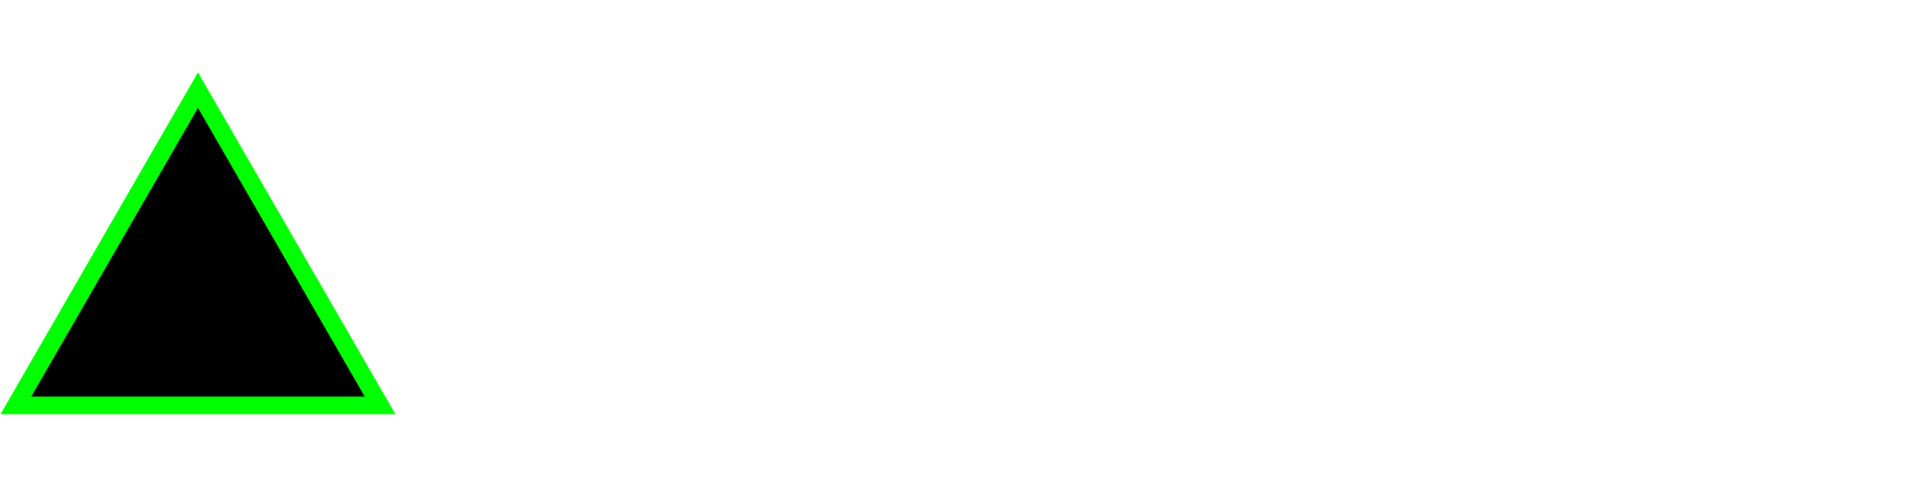 BACE Monitor Surveying